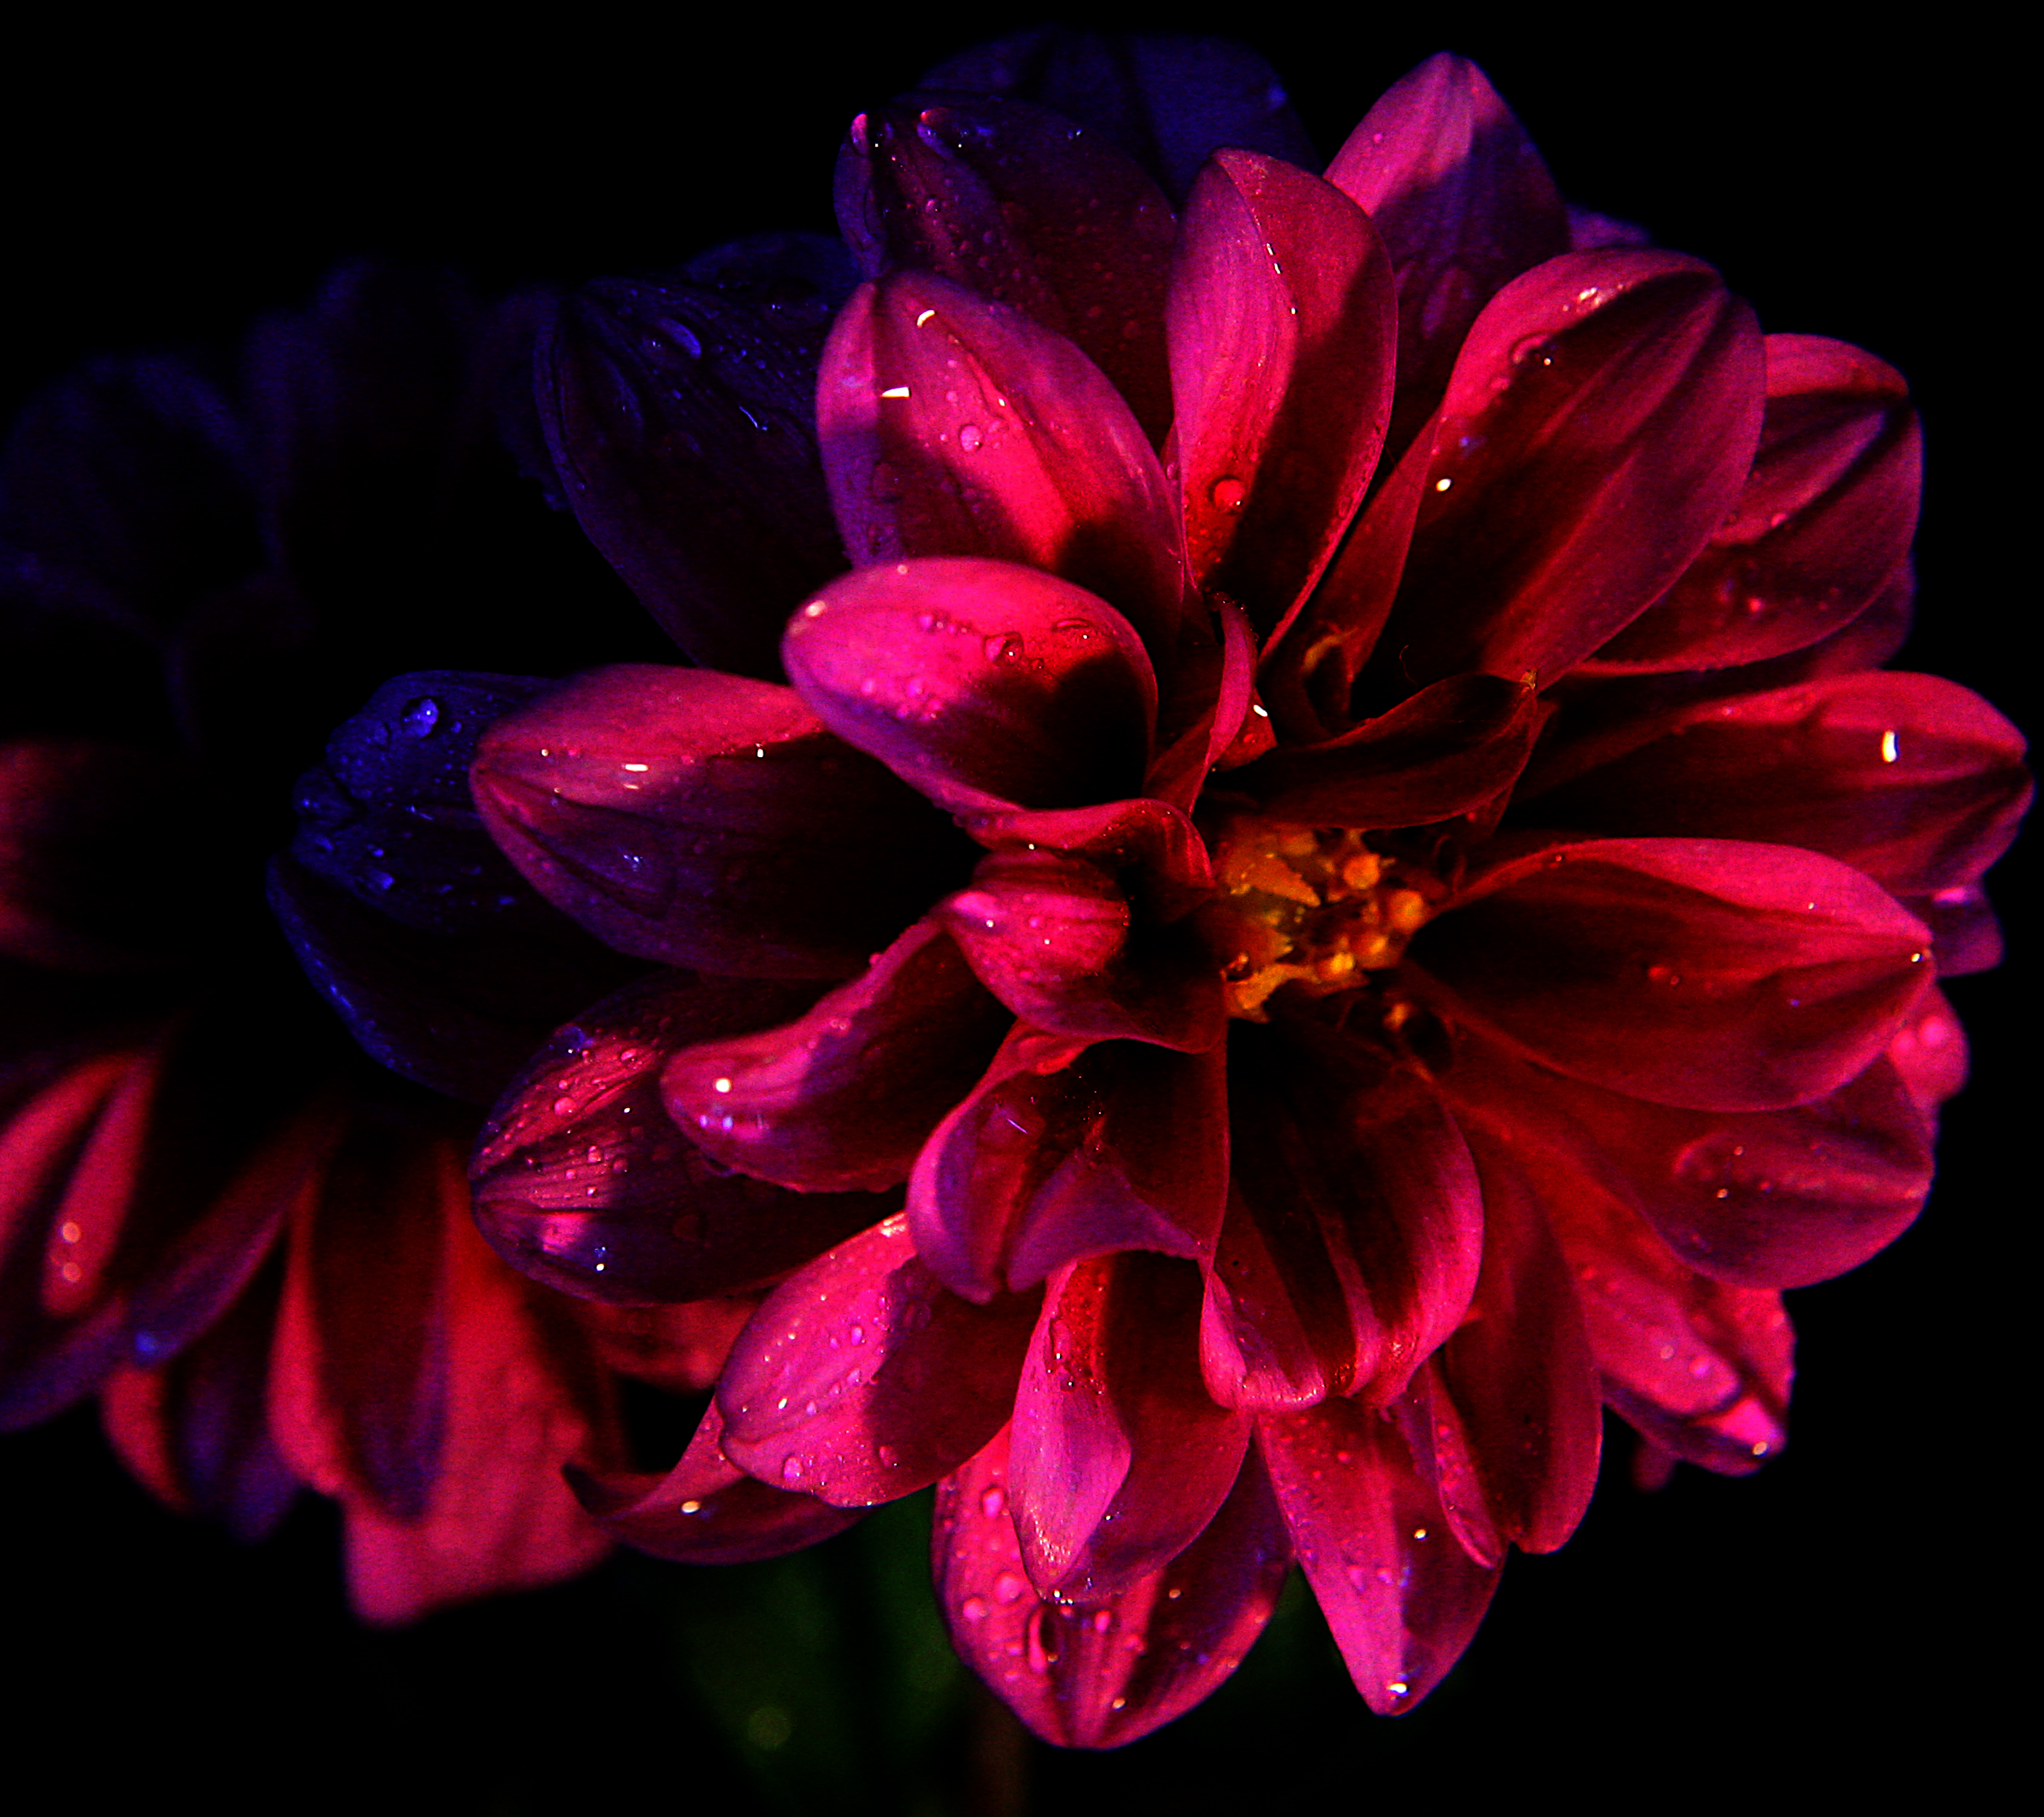 Flower in the dark photo